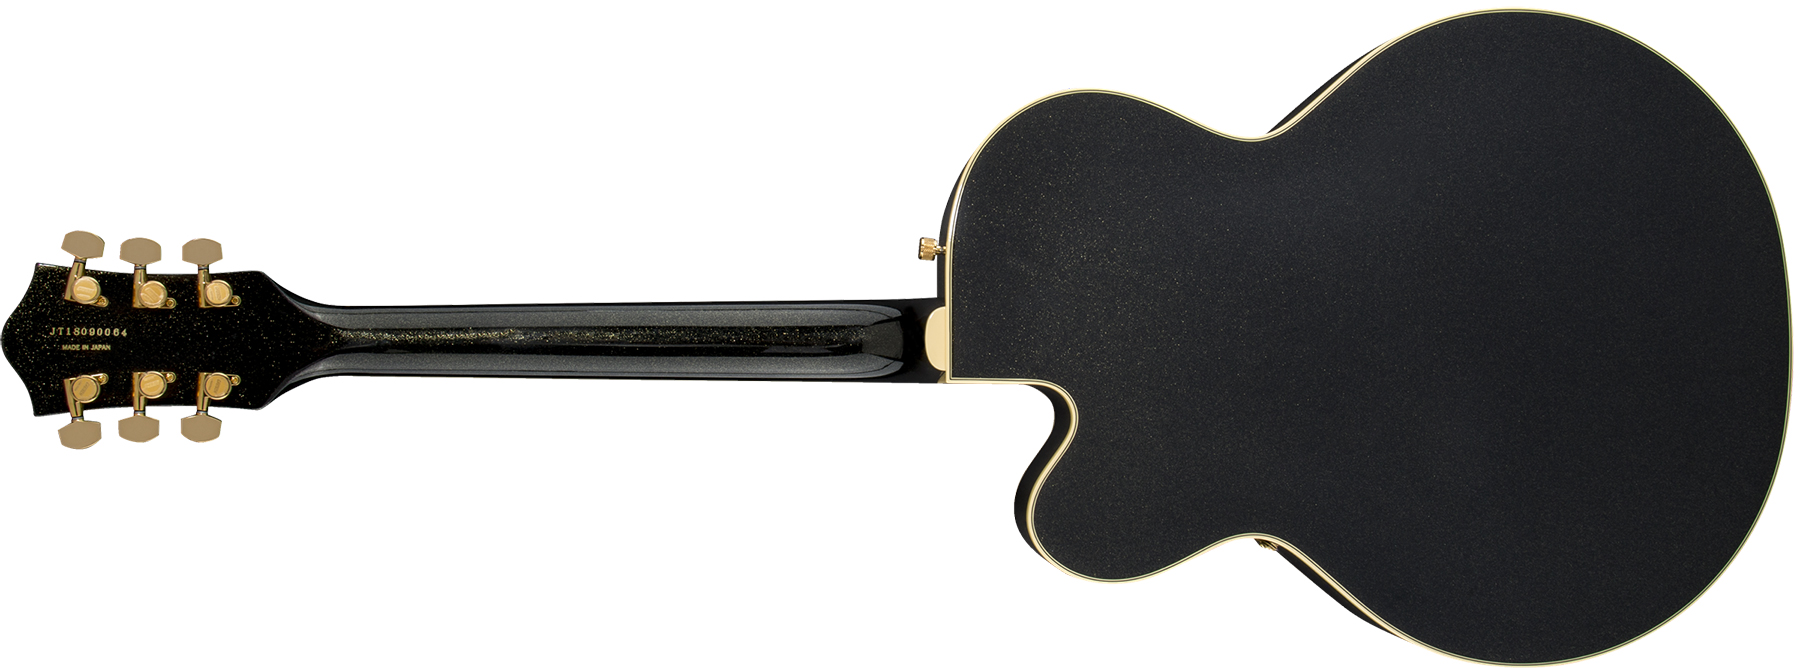 Gretsch Steve Wariner G6120t-sw Nashville Japon Signature Hh Bigsby Eb - Magic Black - Semi hollow elektriche gitaar - Variation 1